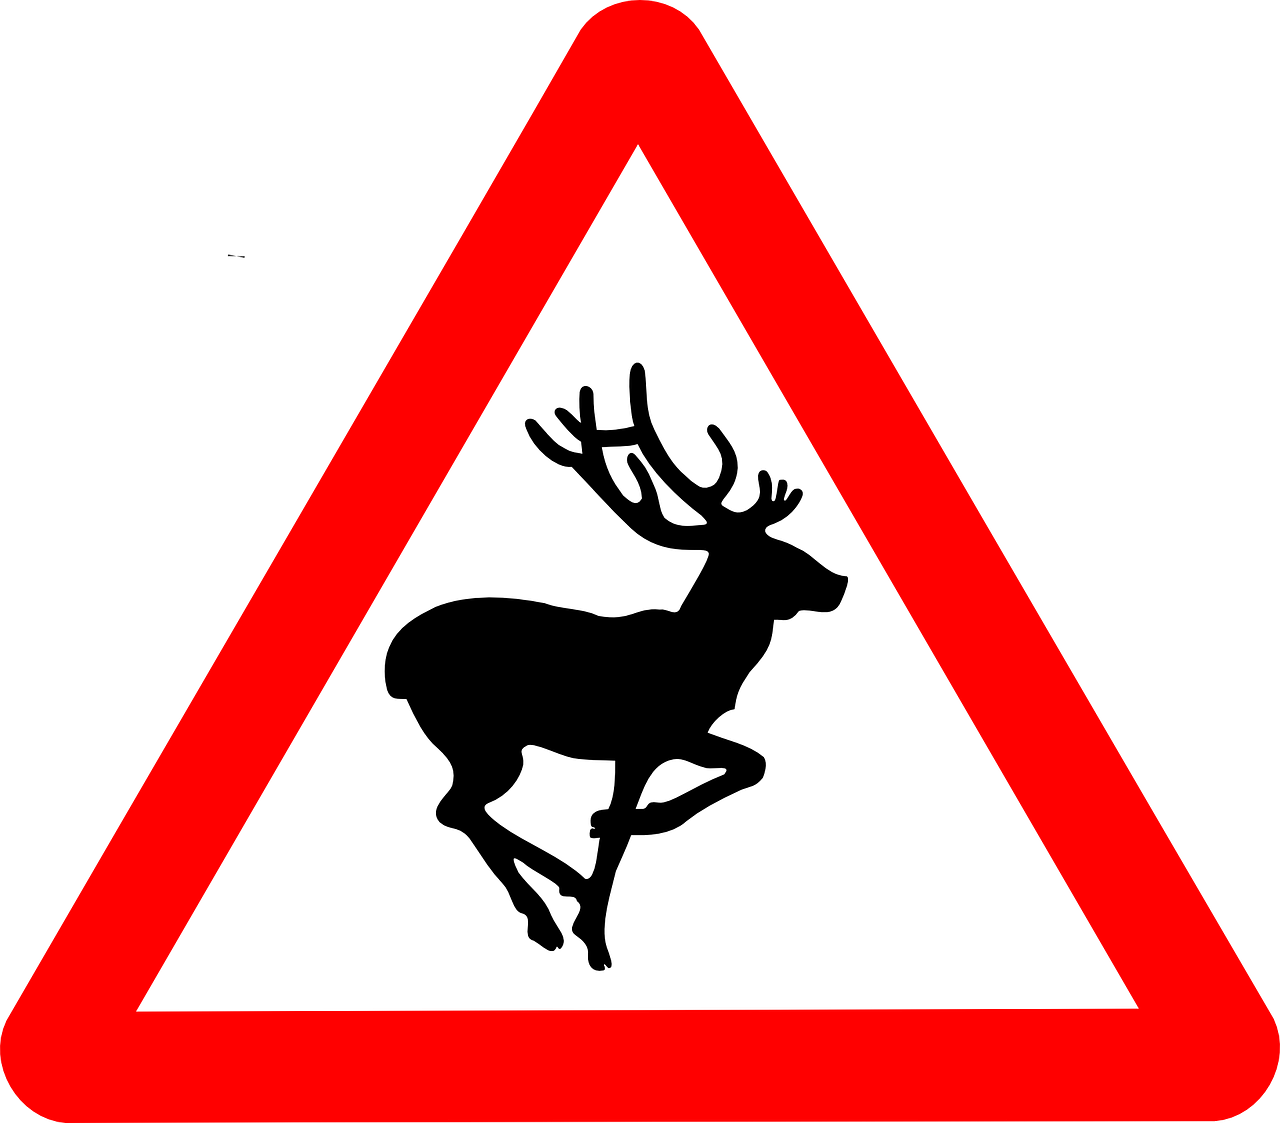 Deer Traffic signs